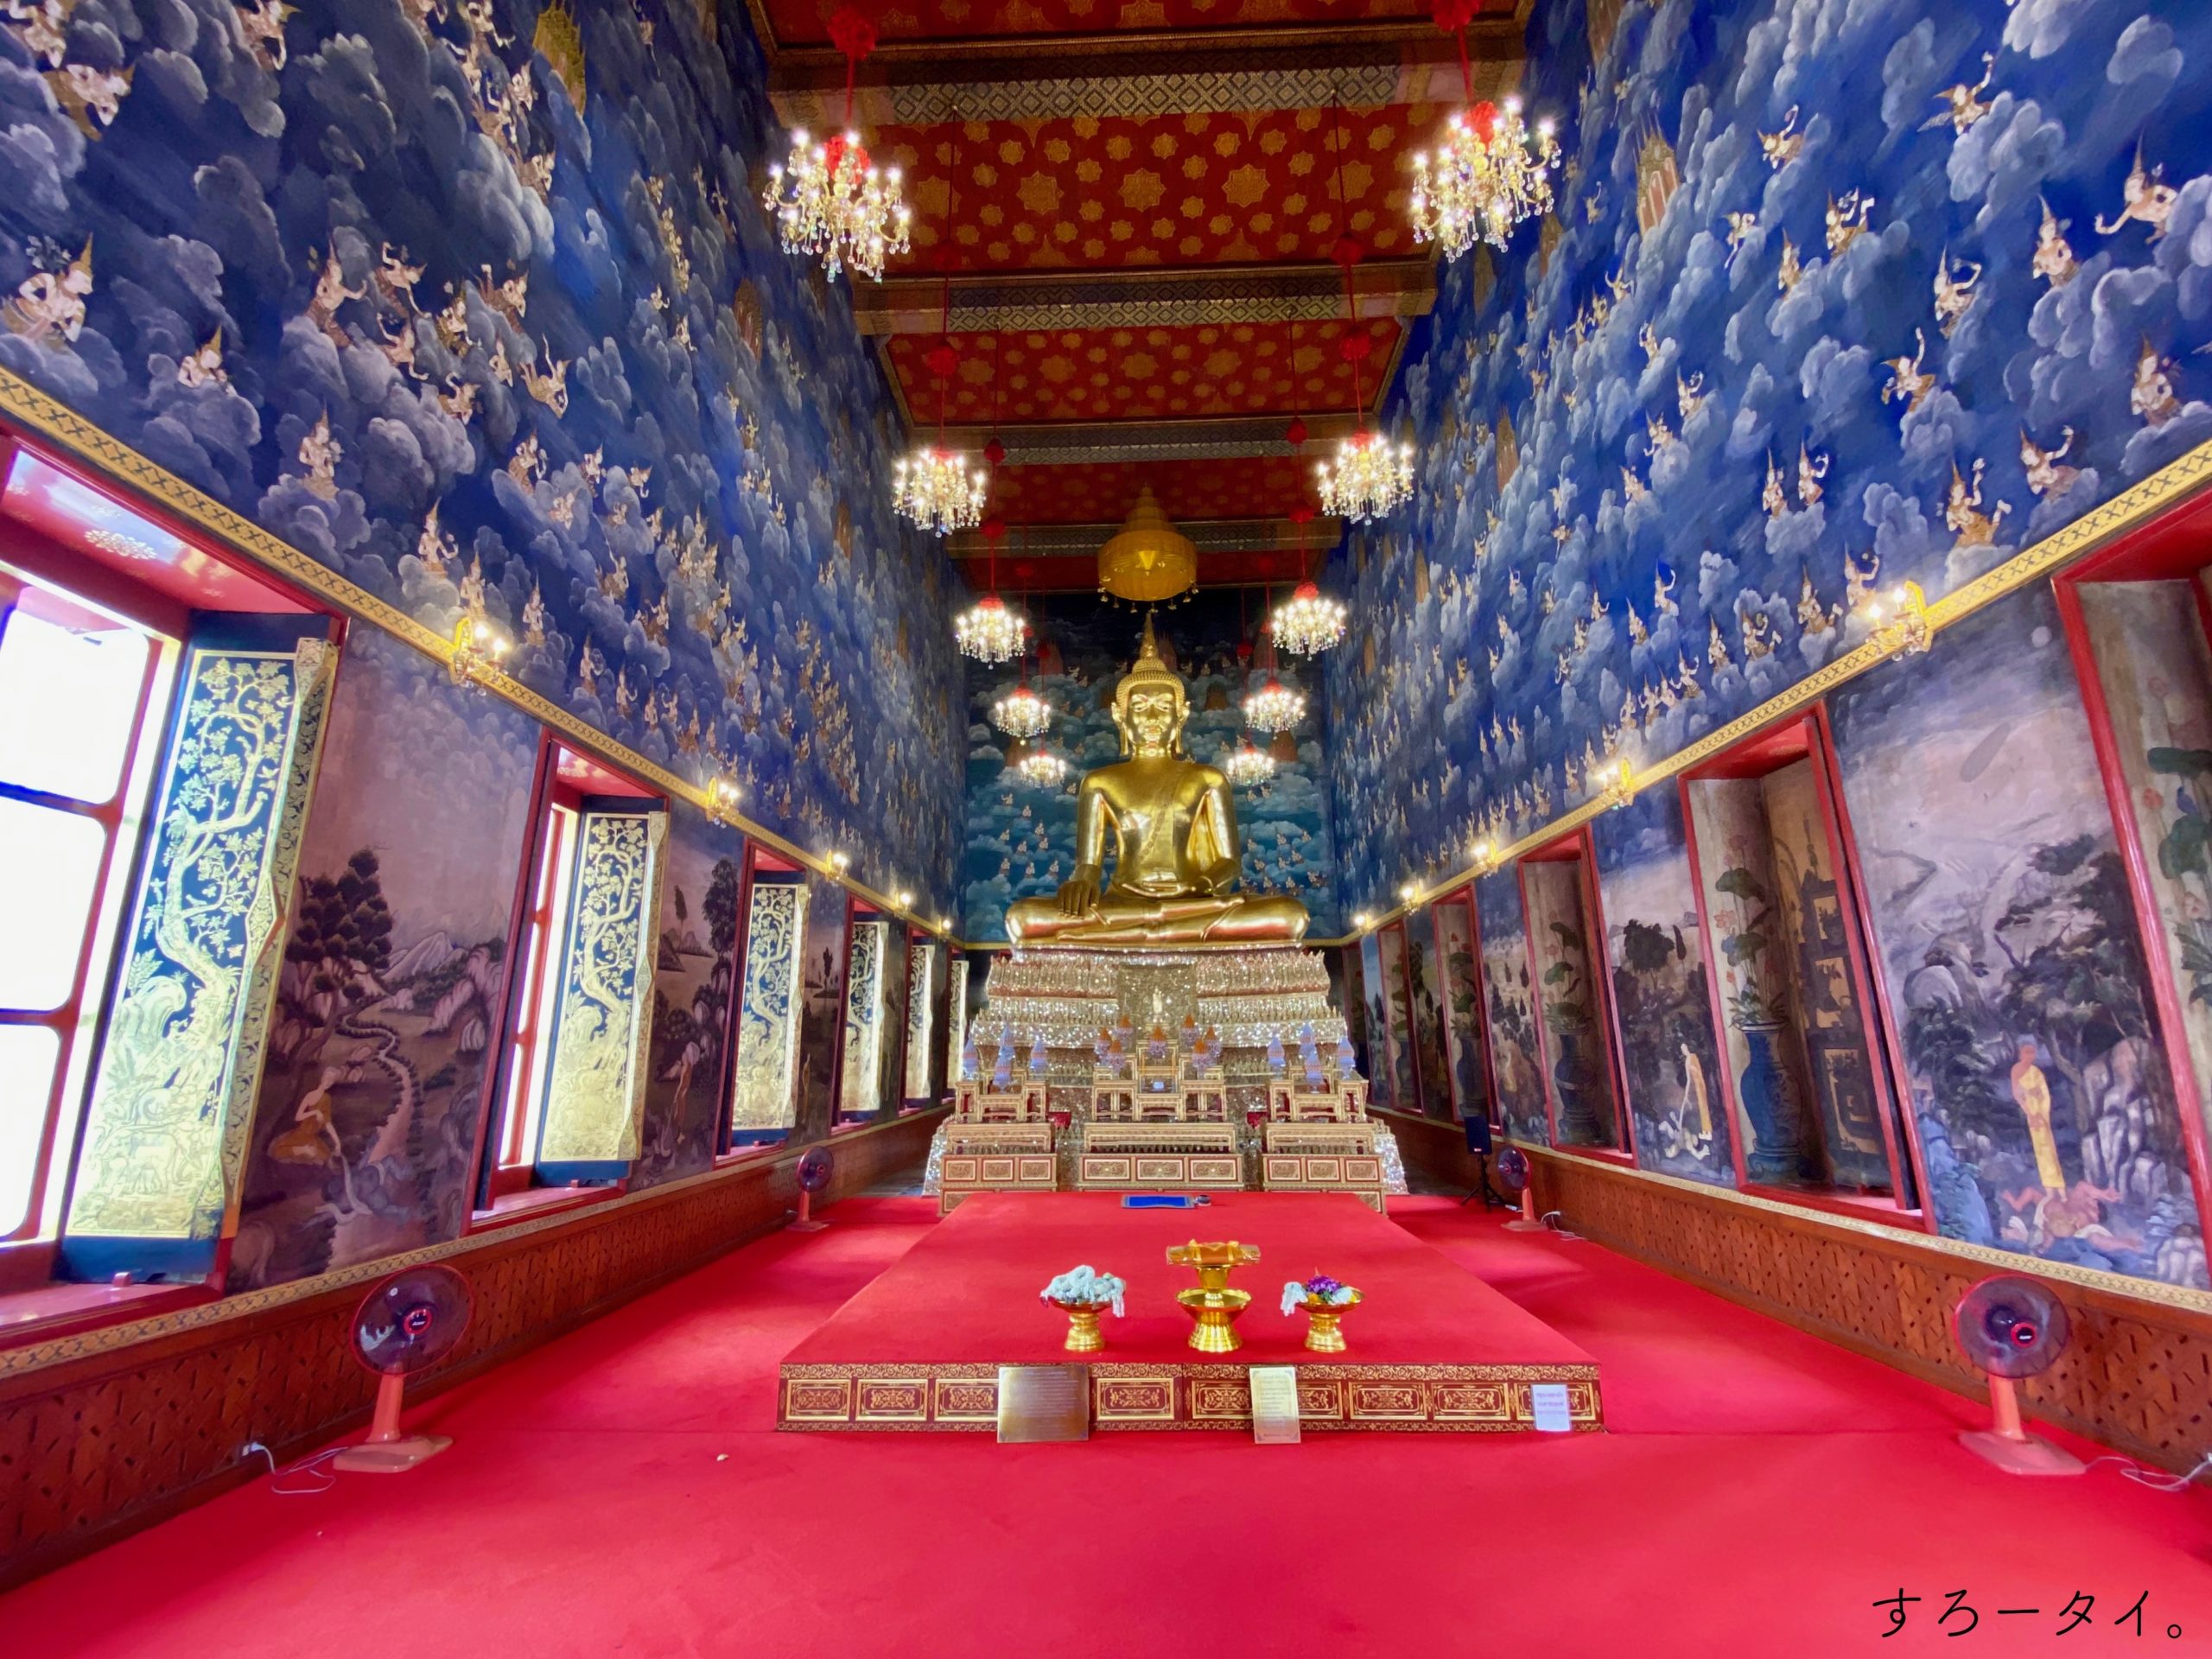 ワット・テーワラートグンチョーン Wat Thewarat Kunchorn วัดเทวราชกุญชร